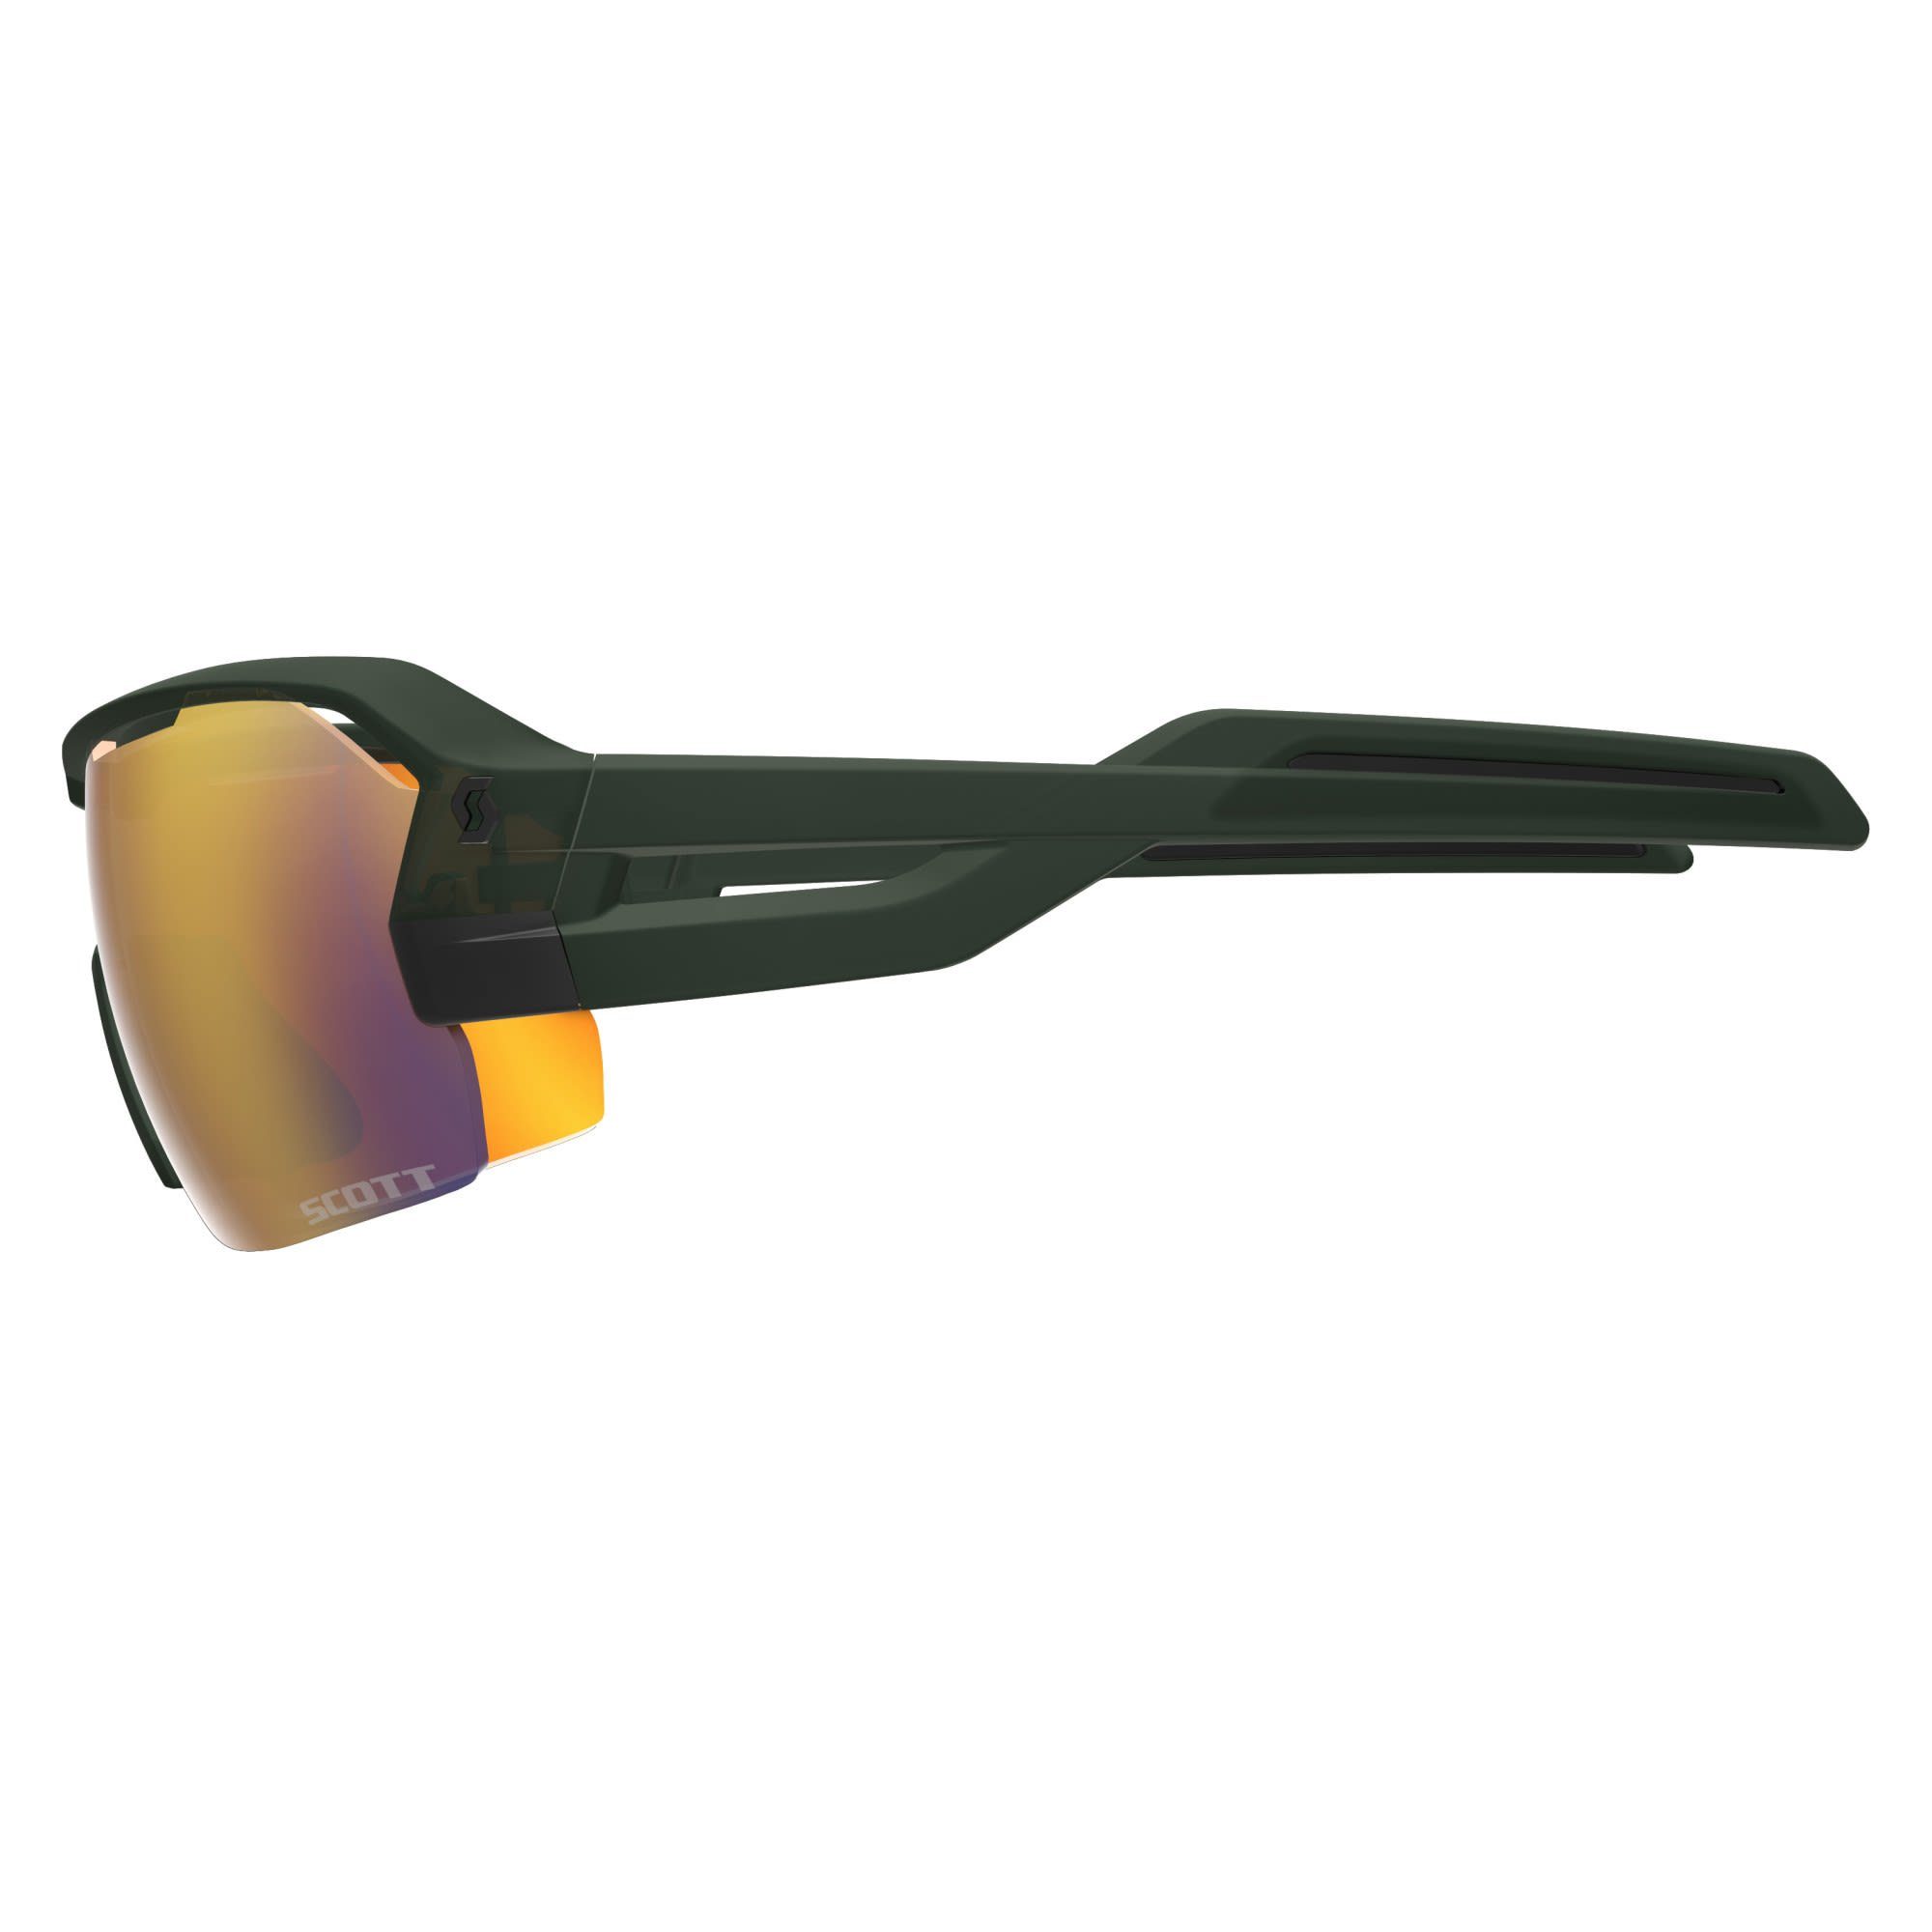 Scott Scott Sunglasses - Chrome Green Enhancer Fahrradbrille Spur Accessoires Clear - Red Khaki